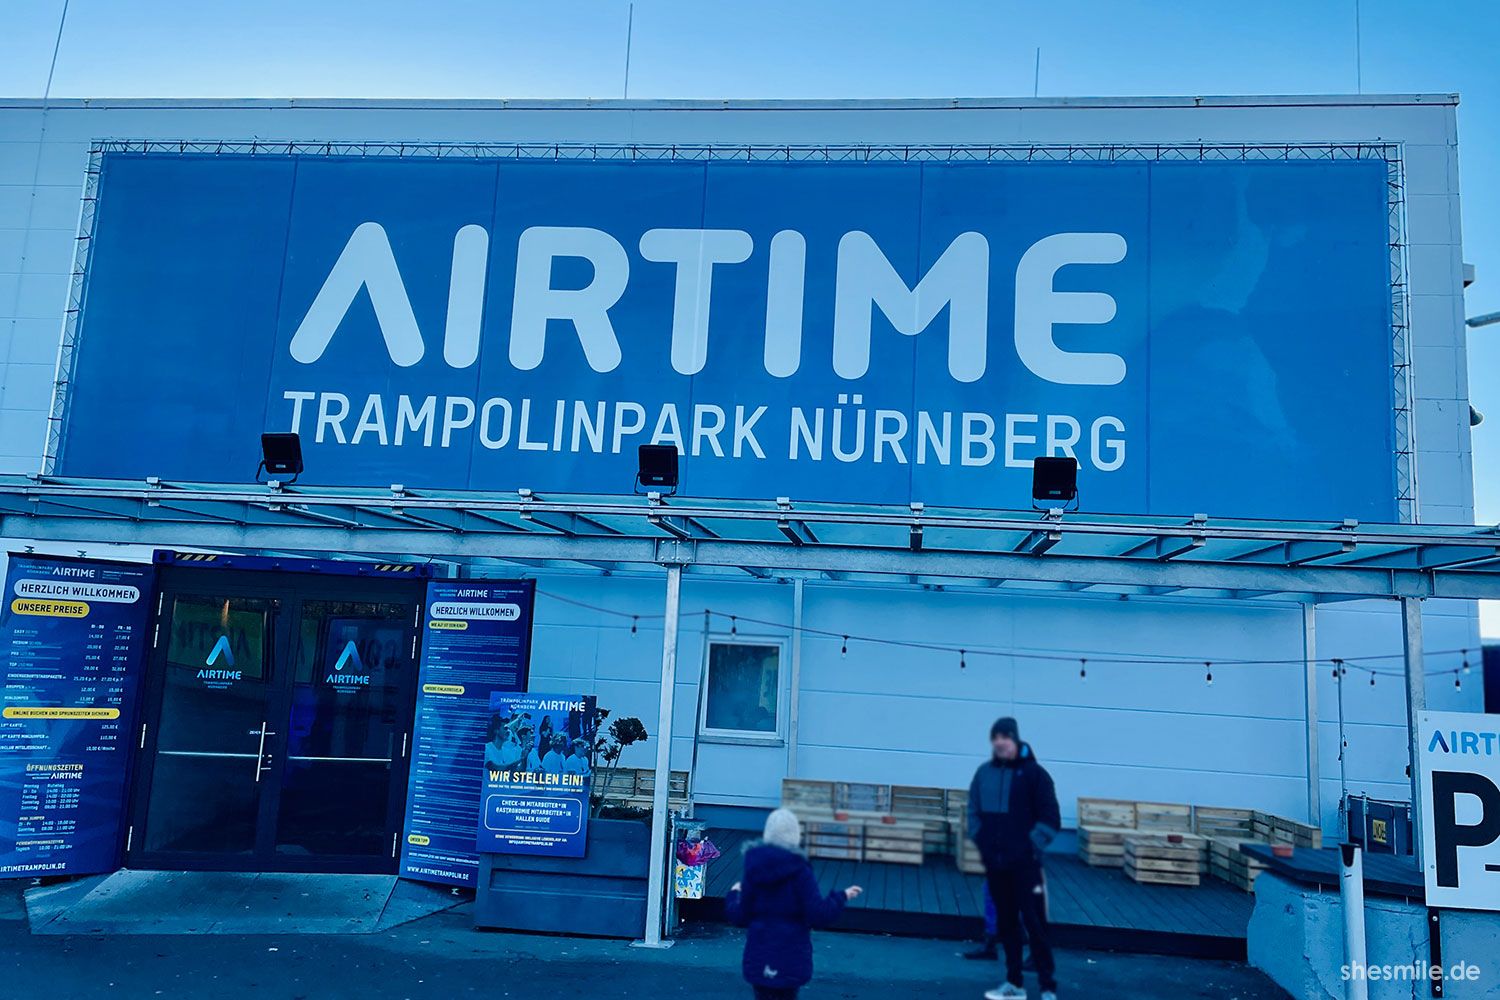 Airtime Trampolinpark Nürnberg